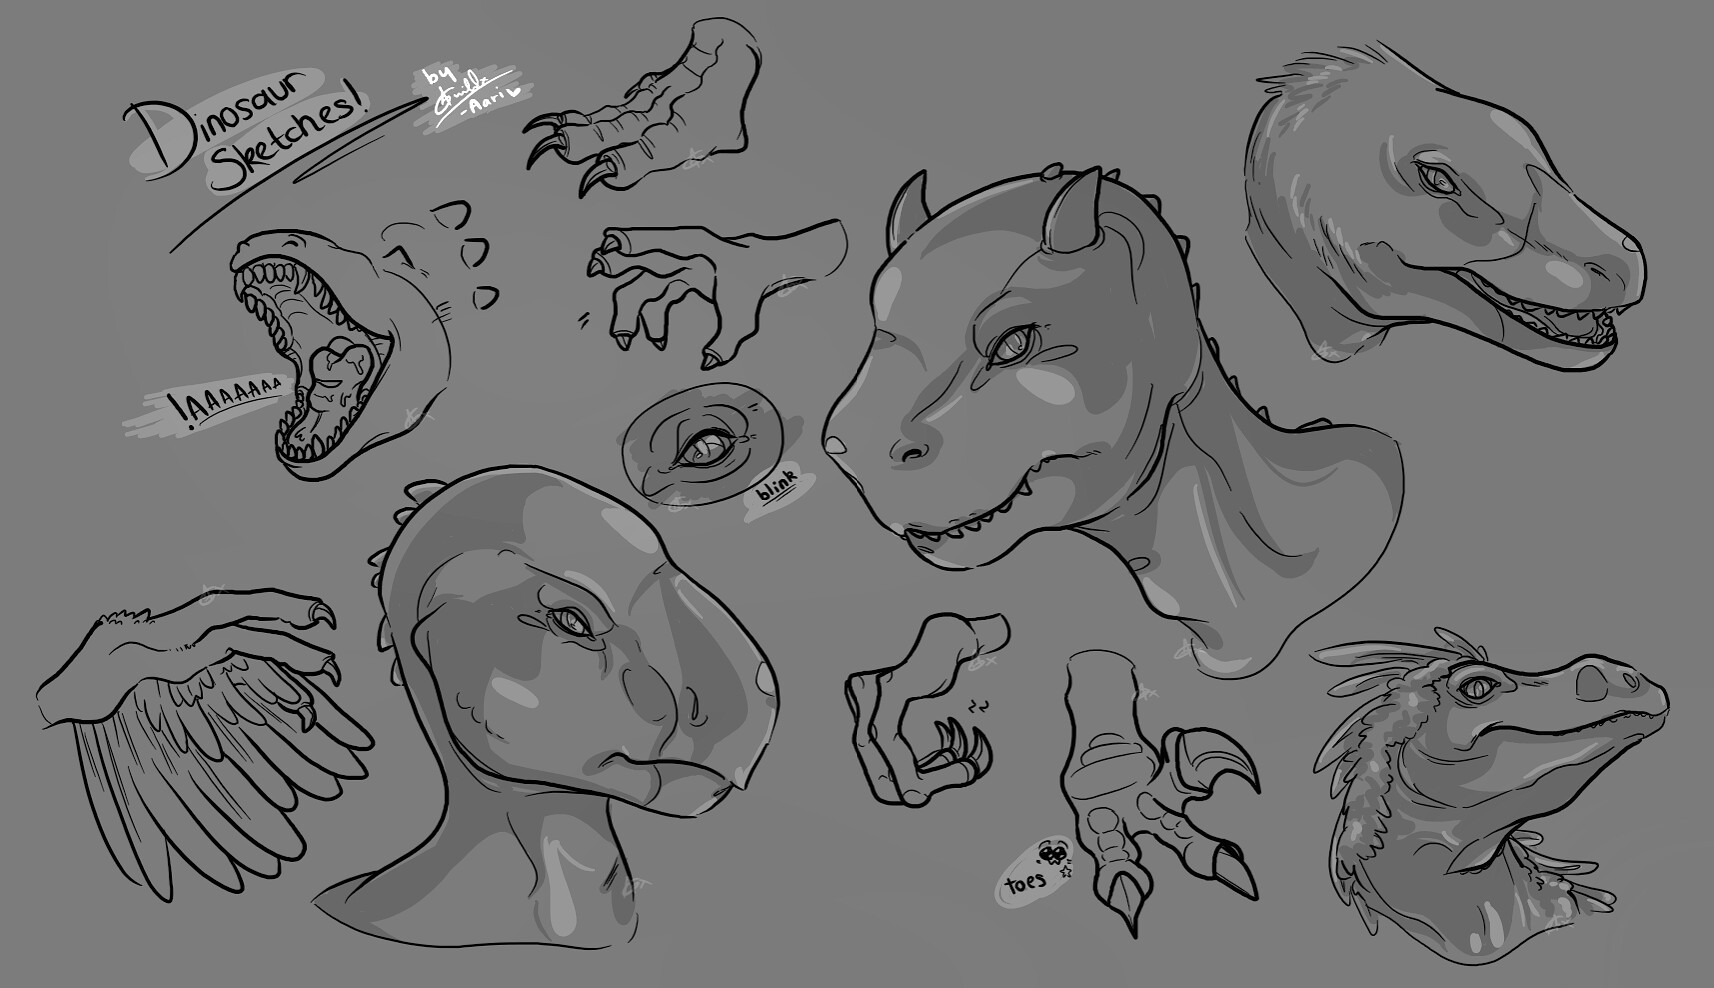 ArtStation - Dinosaur sketches